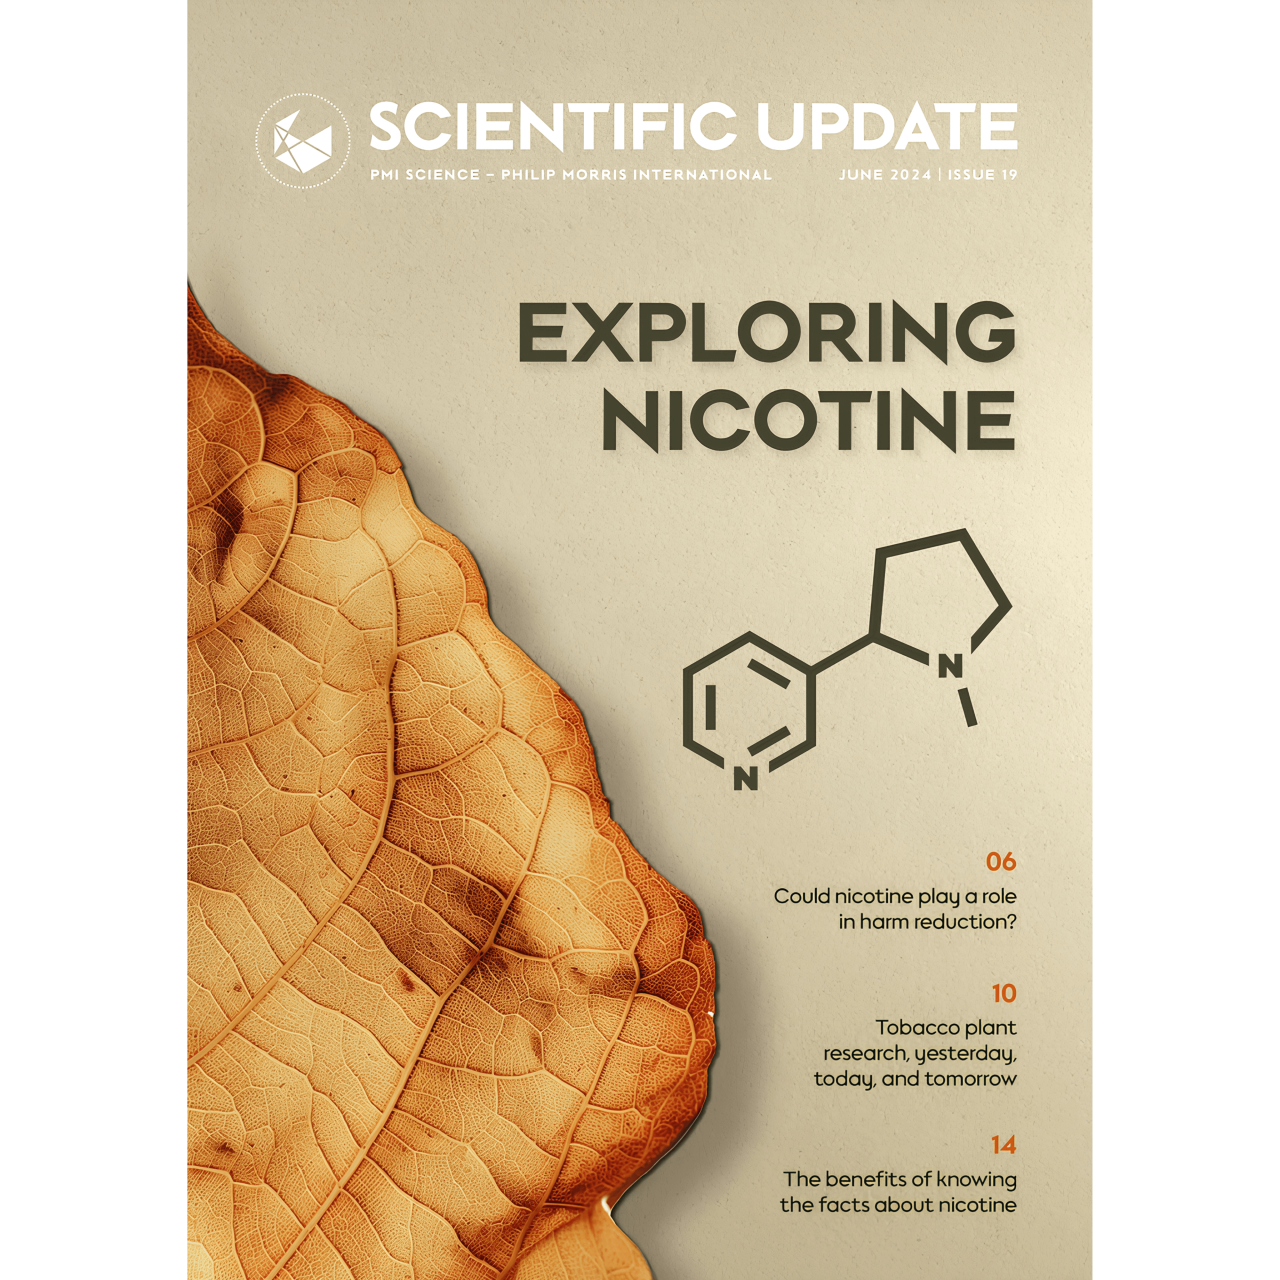 Scientific Update 19: Exploring nicotine